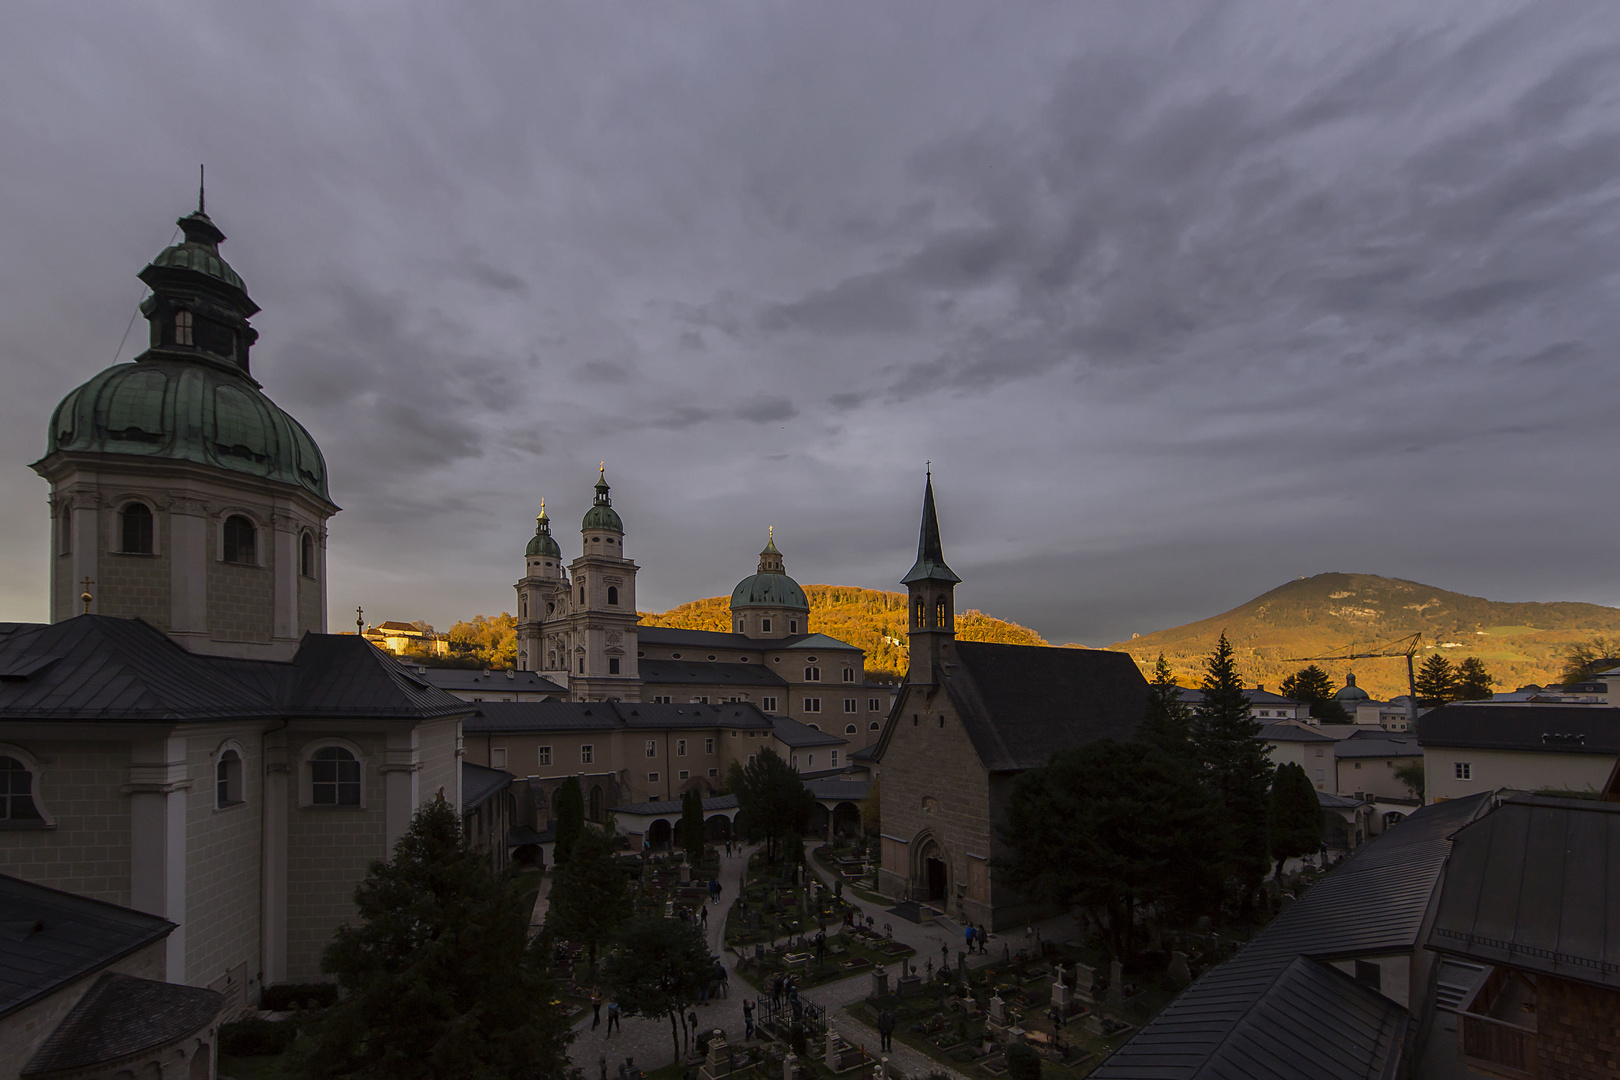 Sunset over Salzburg